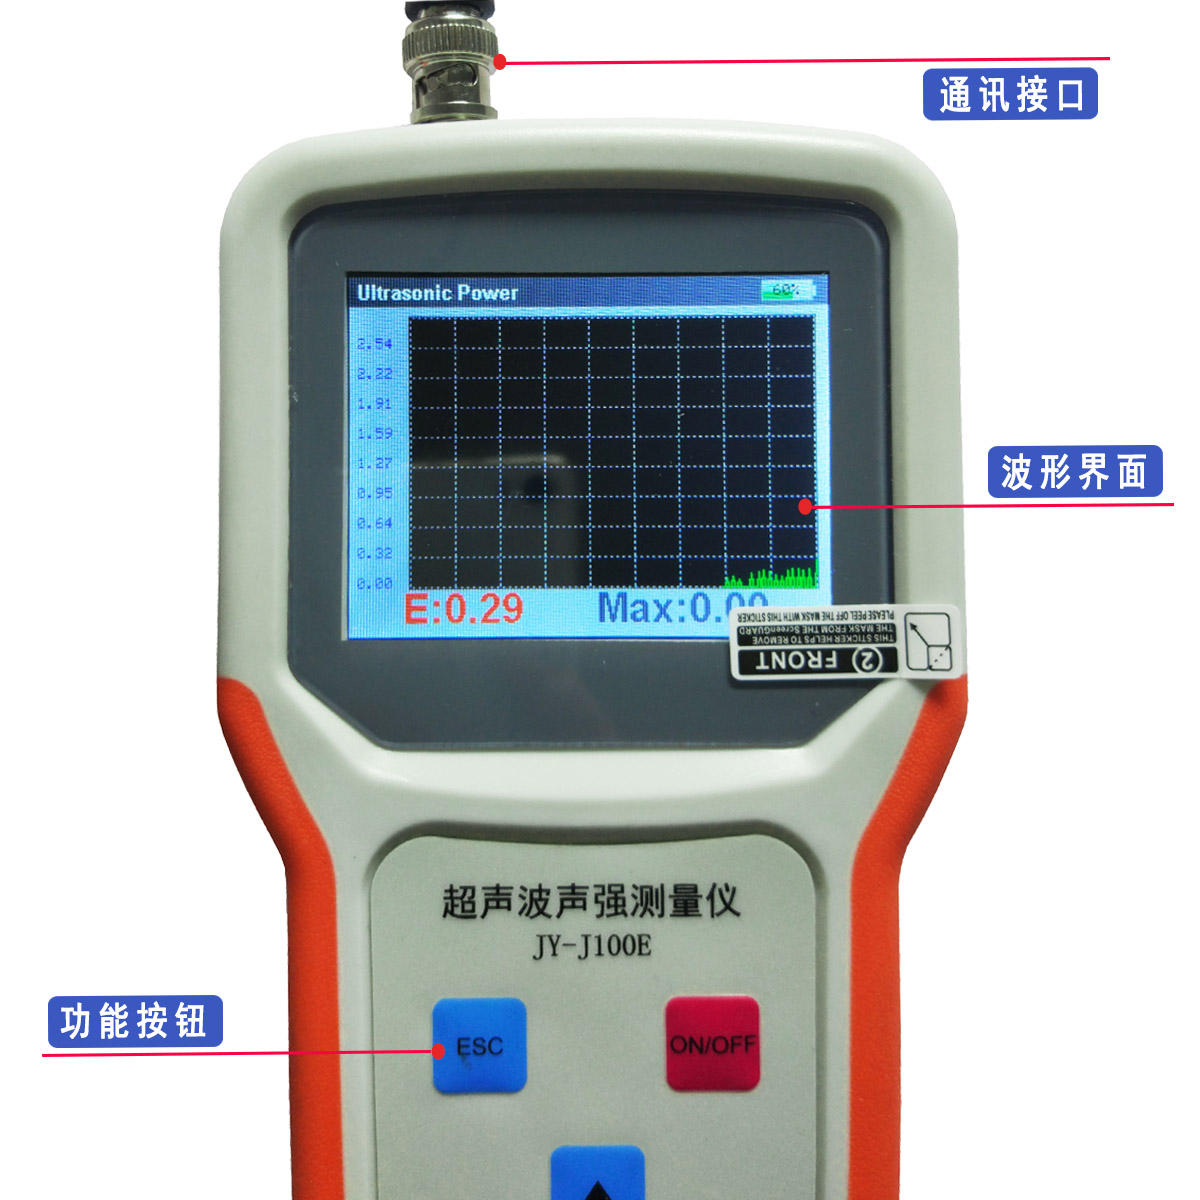 超声波清洗机声强/频率测量仪